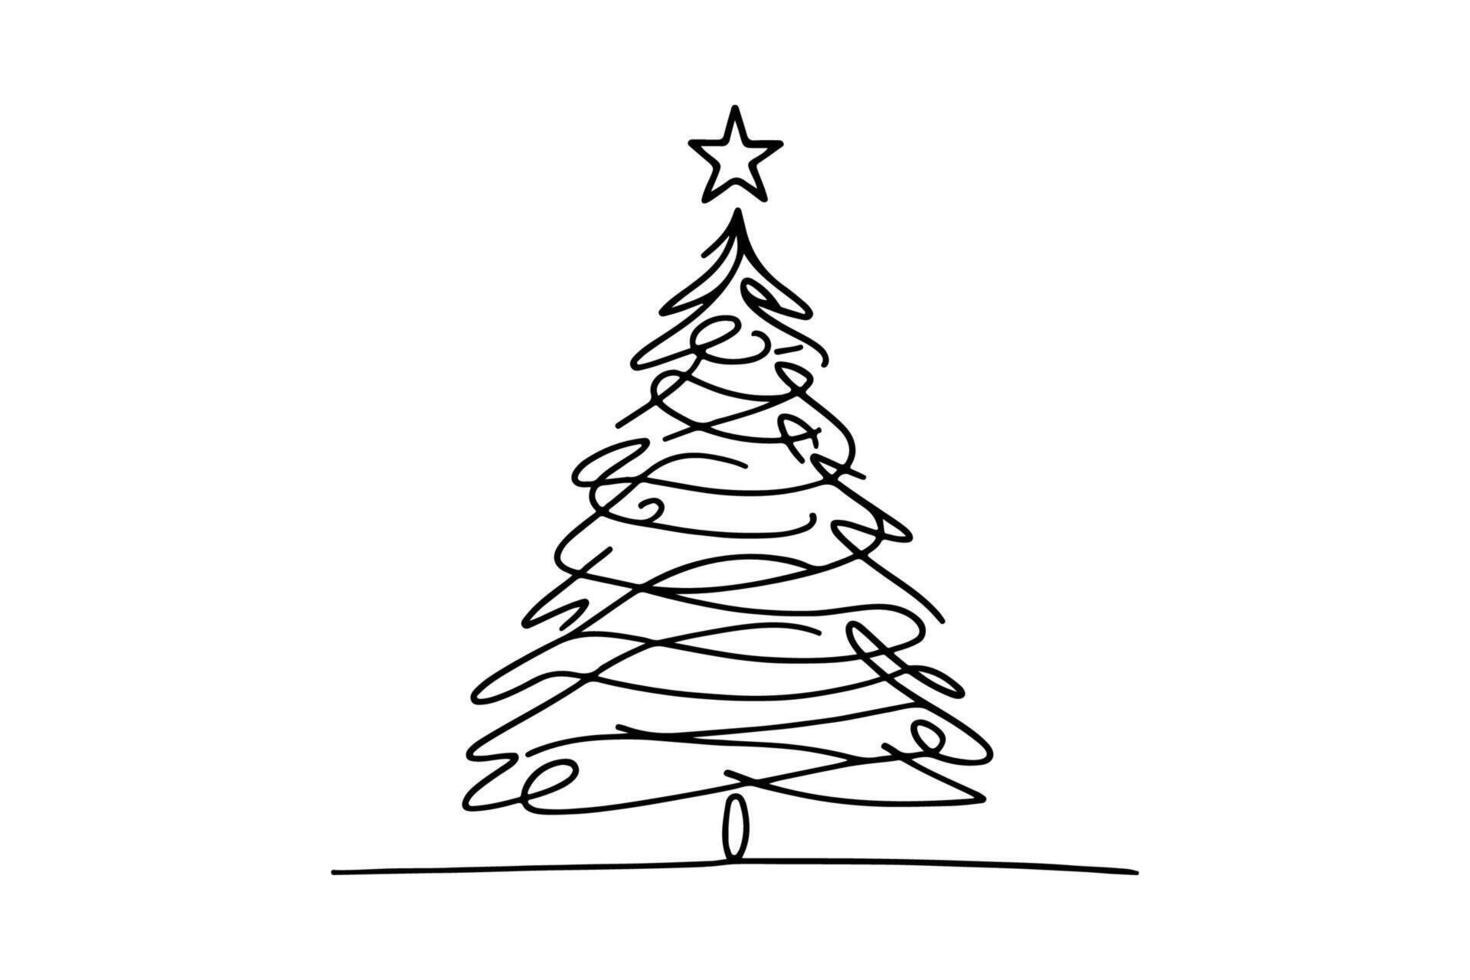 ai gerado ne contínuo Preto linha arte desenhando do alegre Natal árvore. mão desenhado do santa claus esboço rabisco vetor ilustração